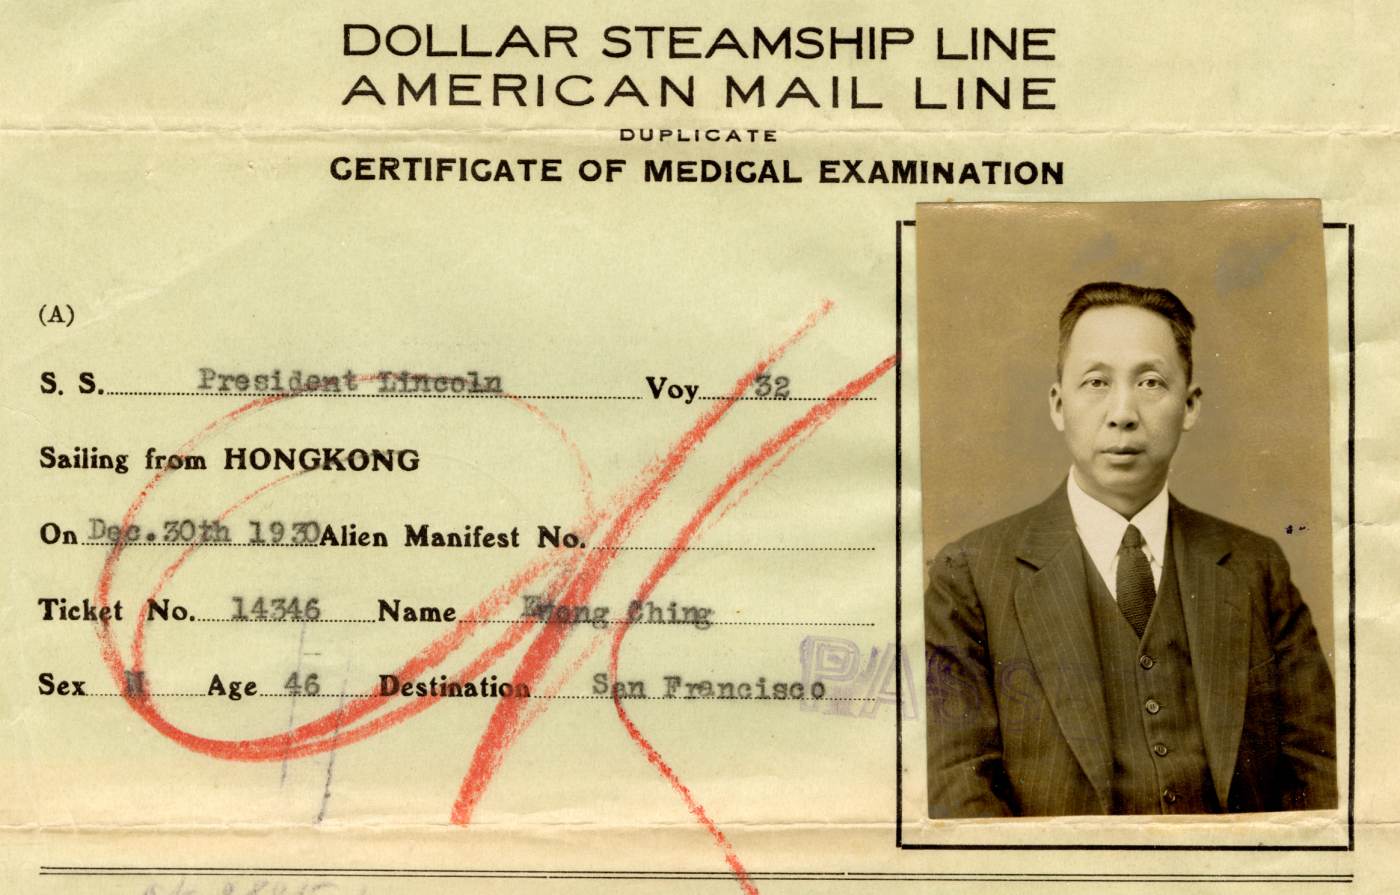 1930年的Dollar Steamship Line体检合格证。由Roy Delbyck 捐赠，美国华人博物馆 (MOCA) 馆藏。